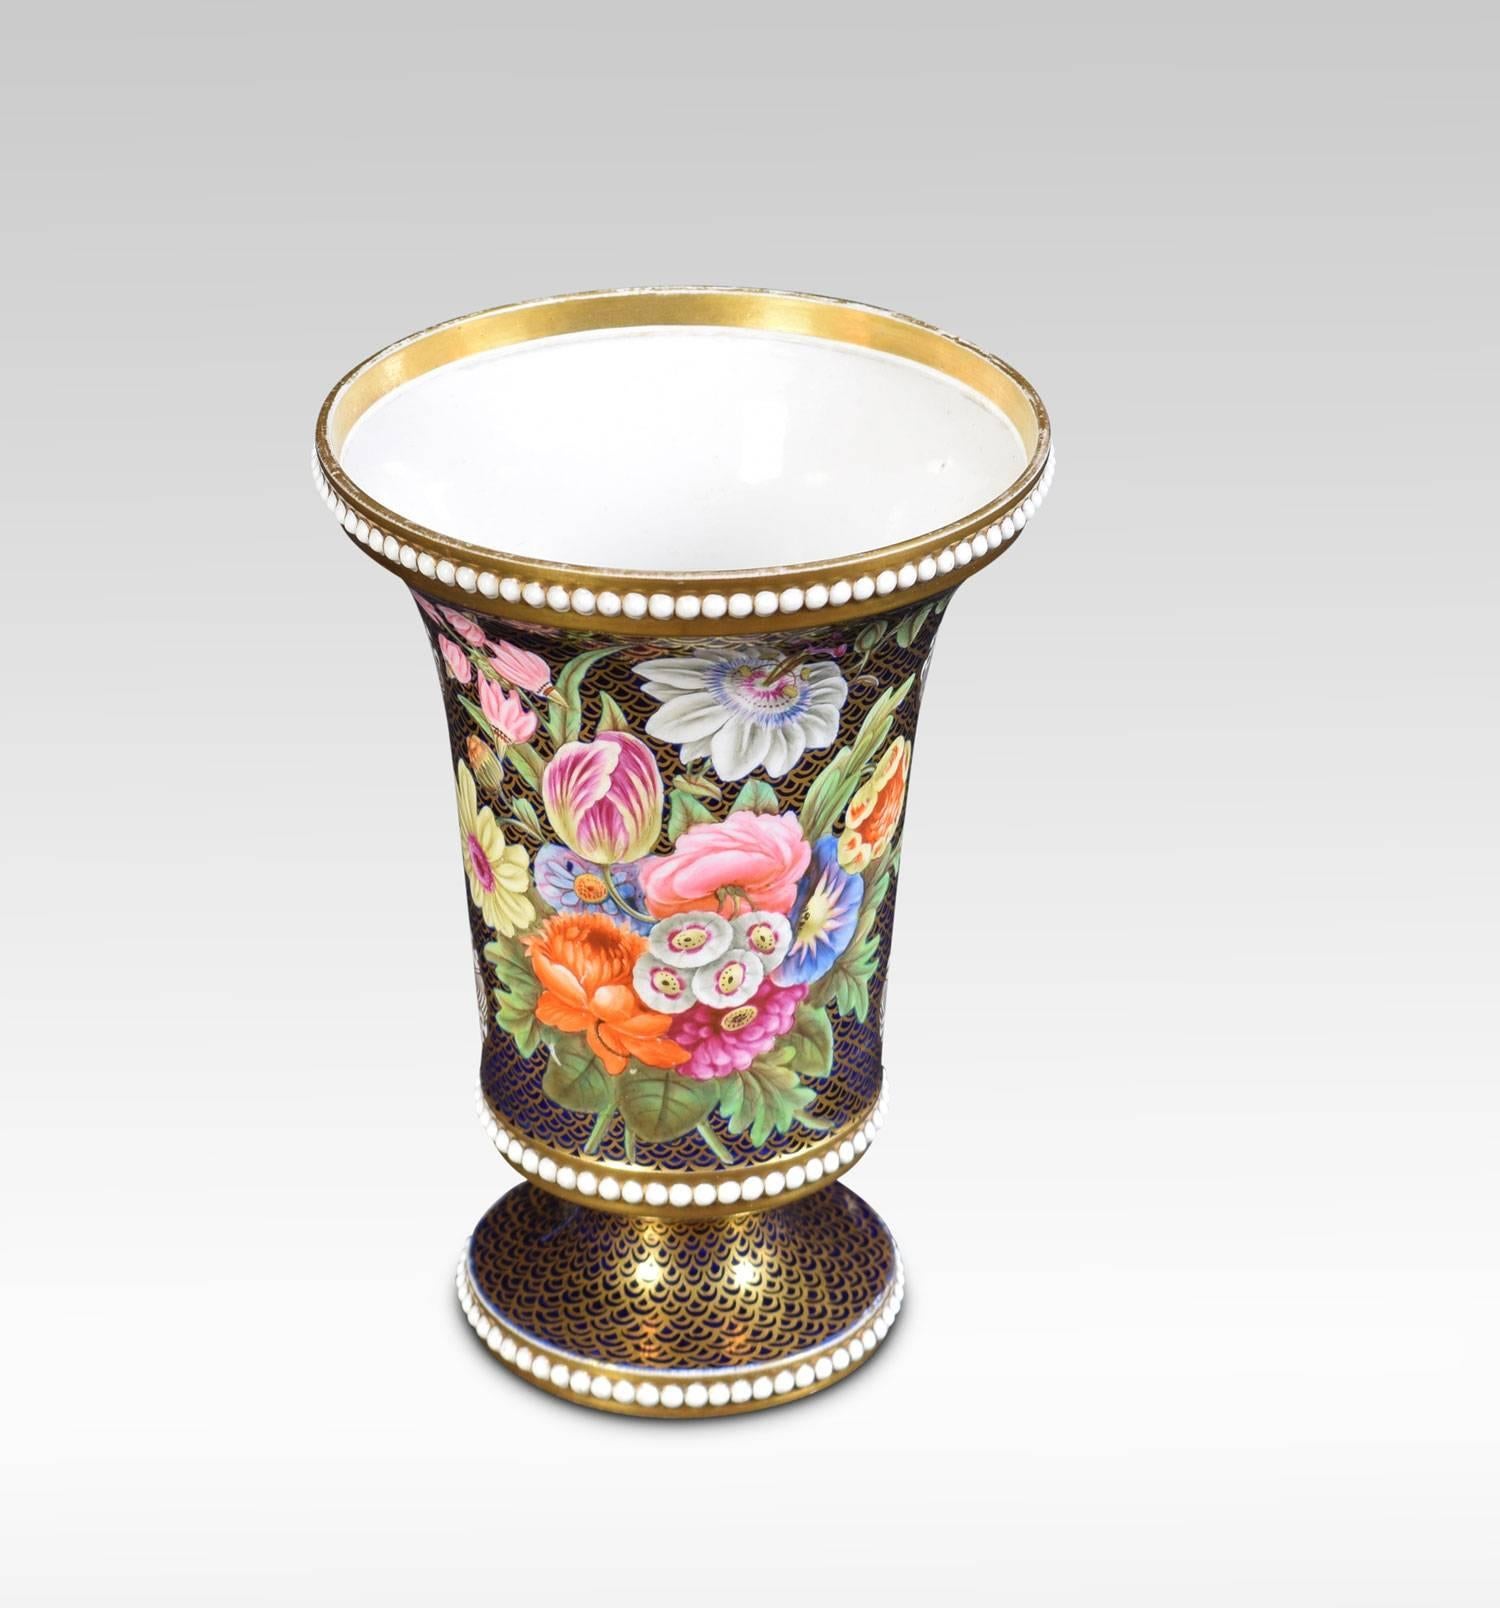 19th Century Regency Period Spode Porcelain Spill Vase